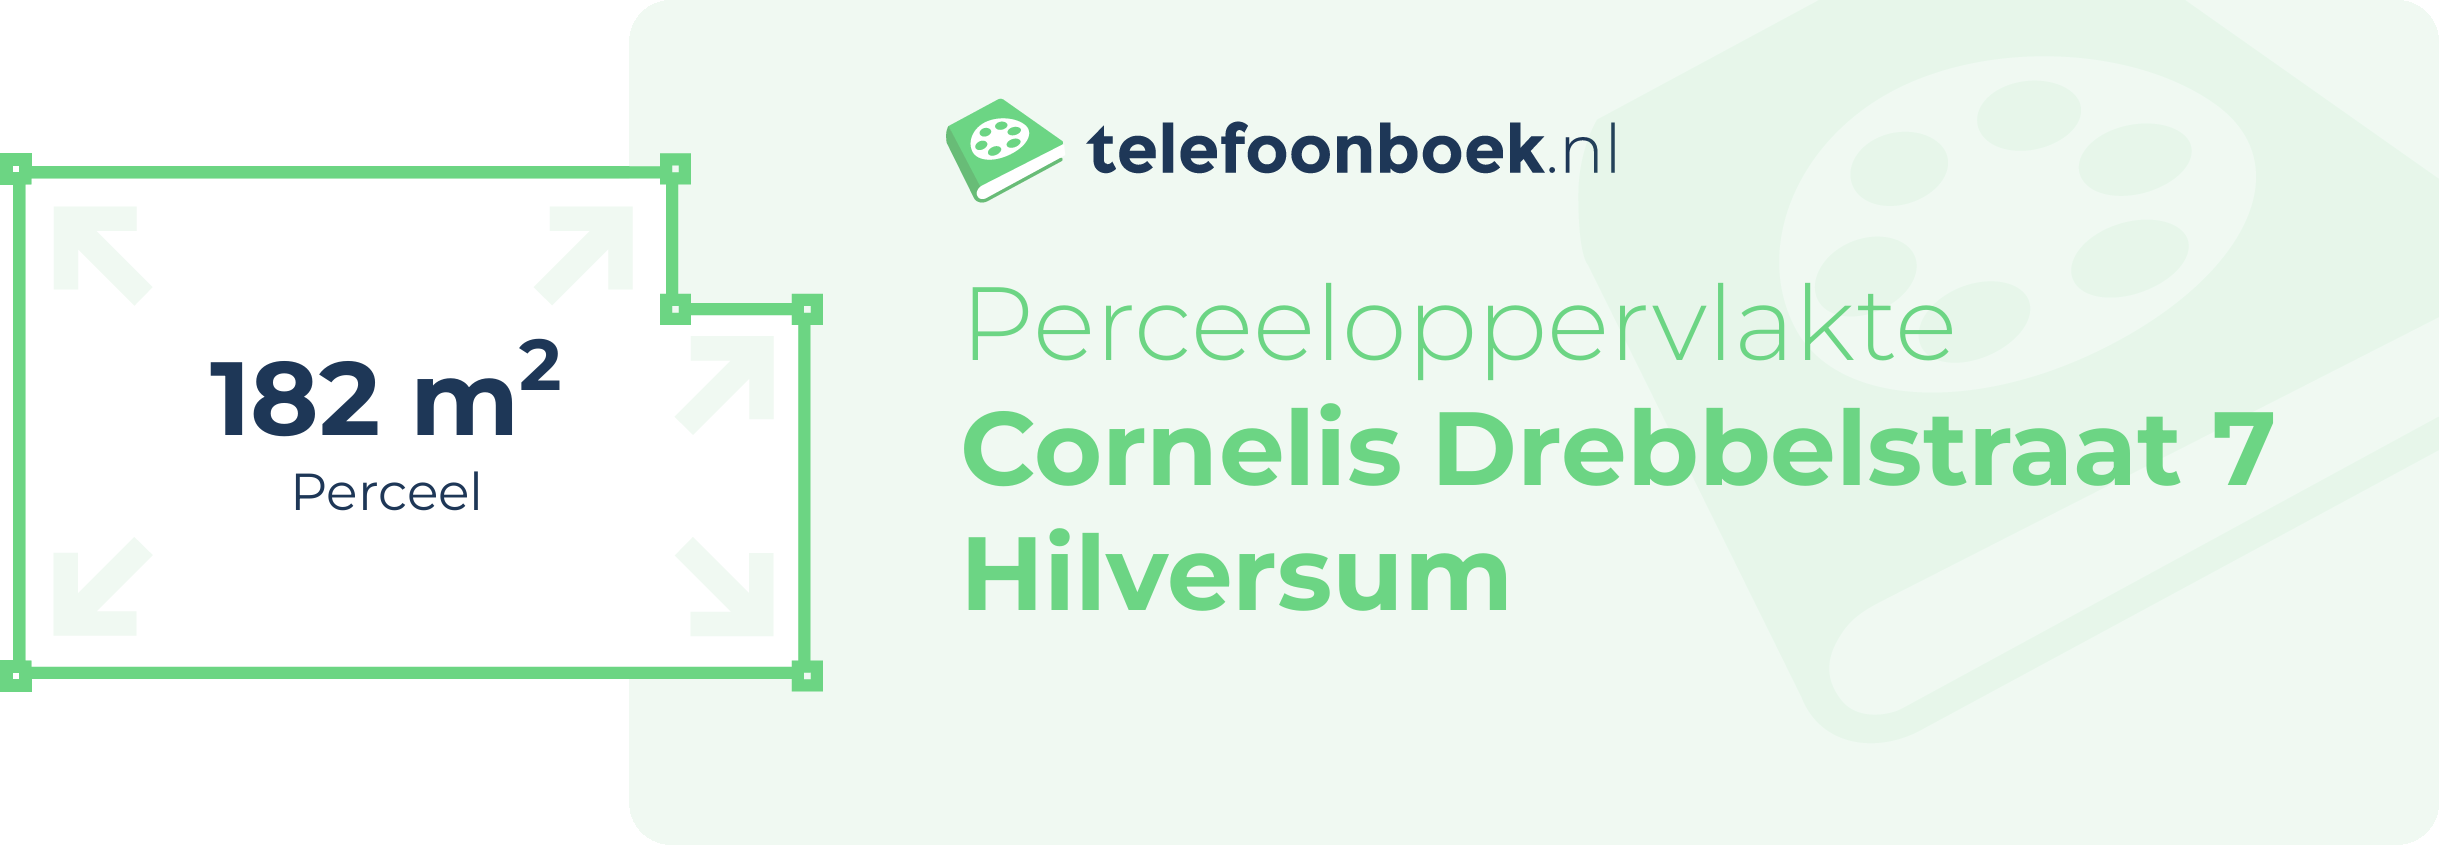 Perceeloppervlakte Cornelis Drebbelstraat 7 Hilversum